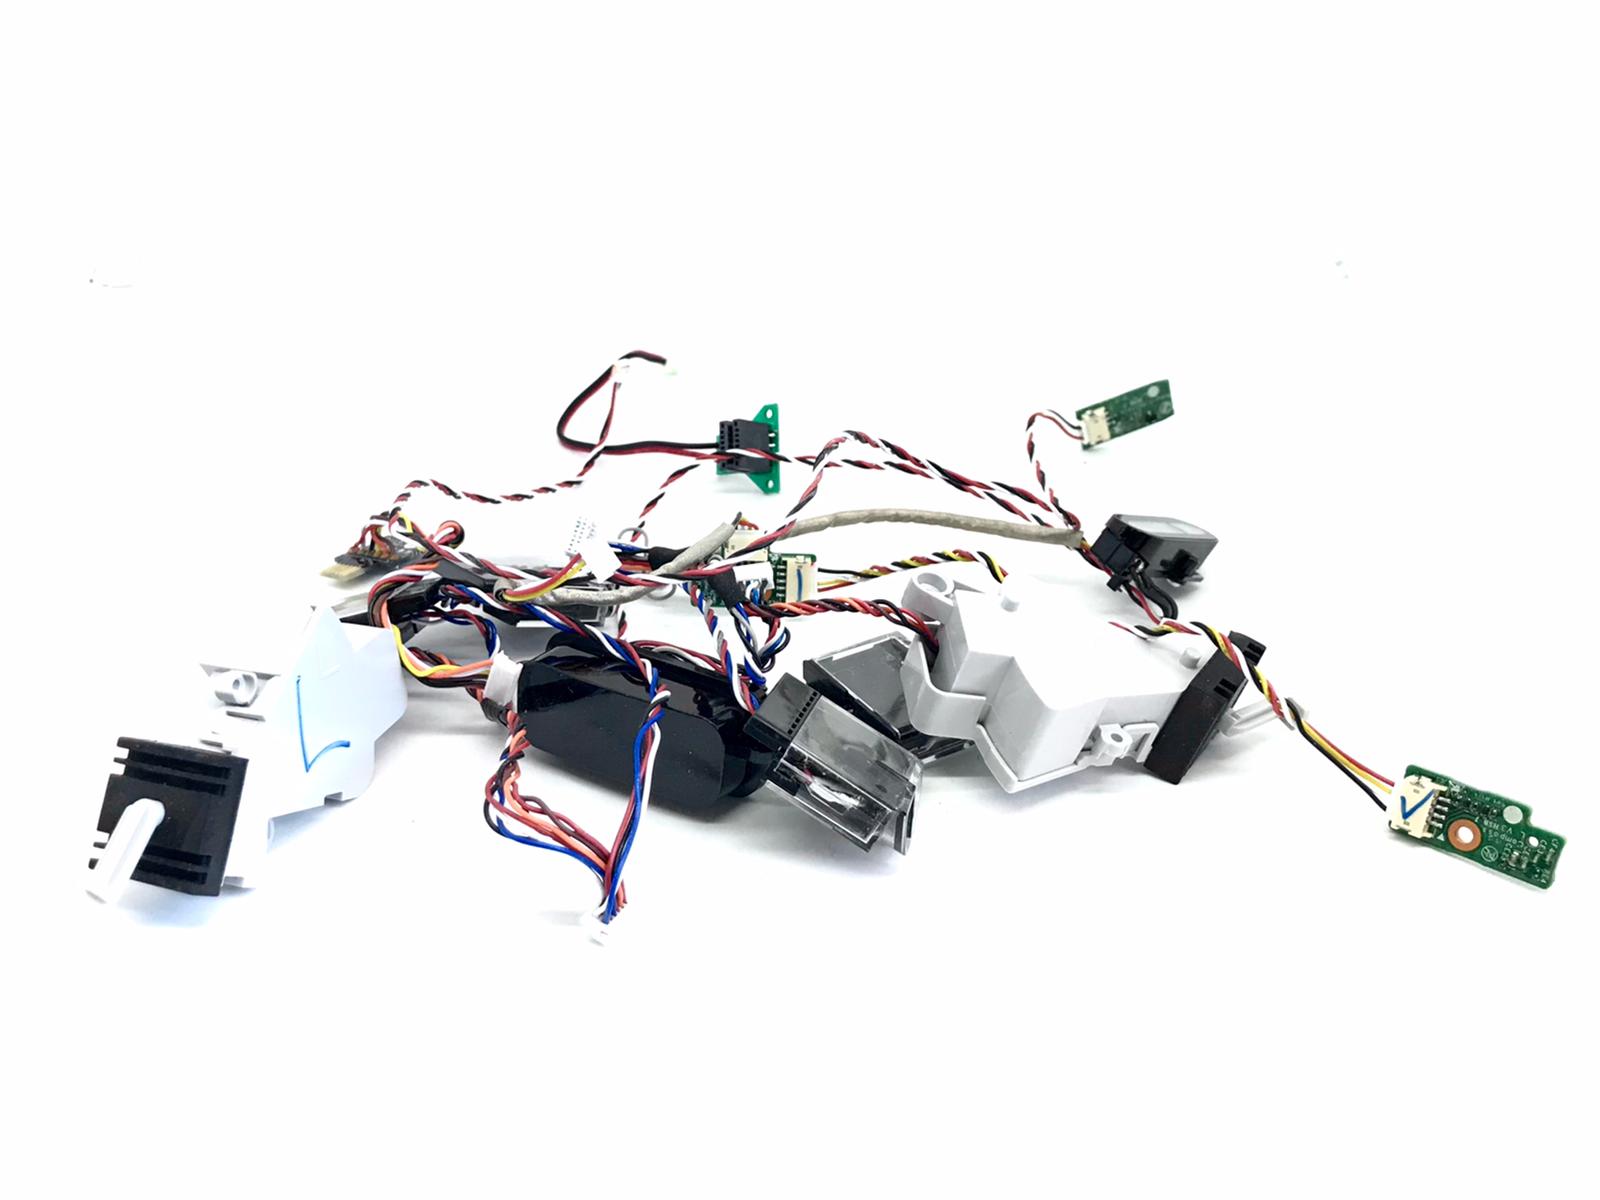 Full Pack of Sensors iRobot Roomba i7 Price - iNeedParts